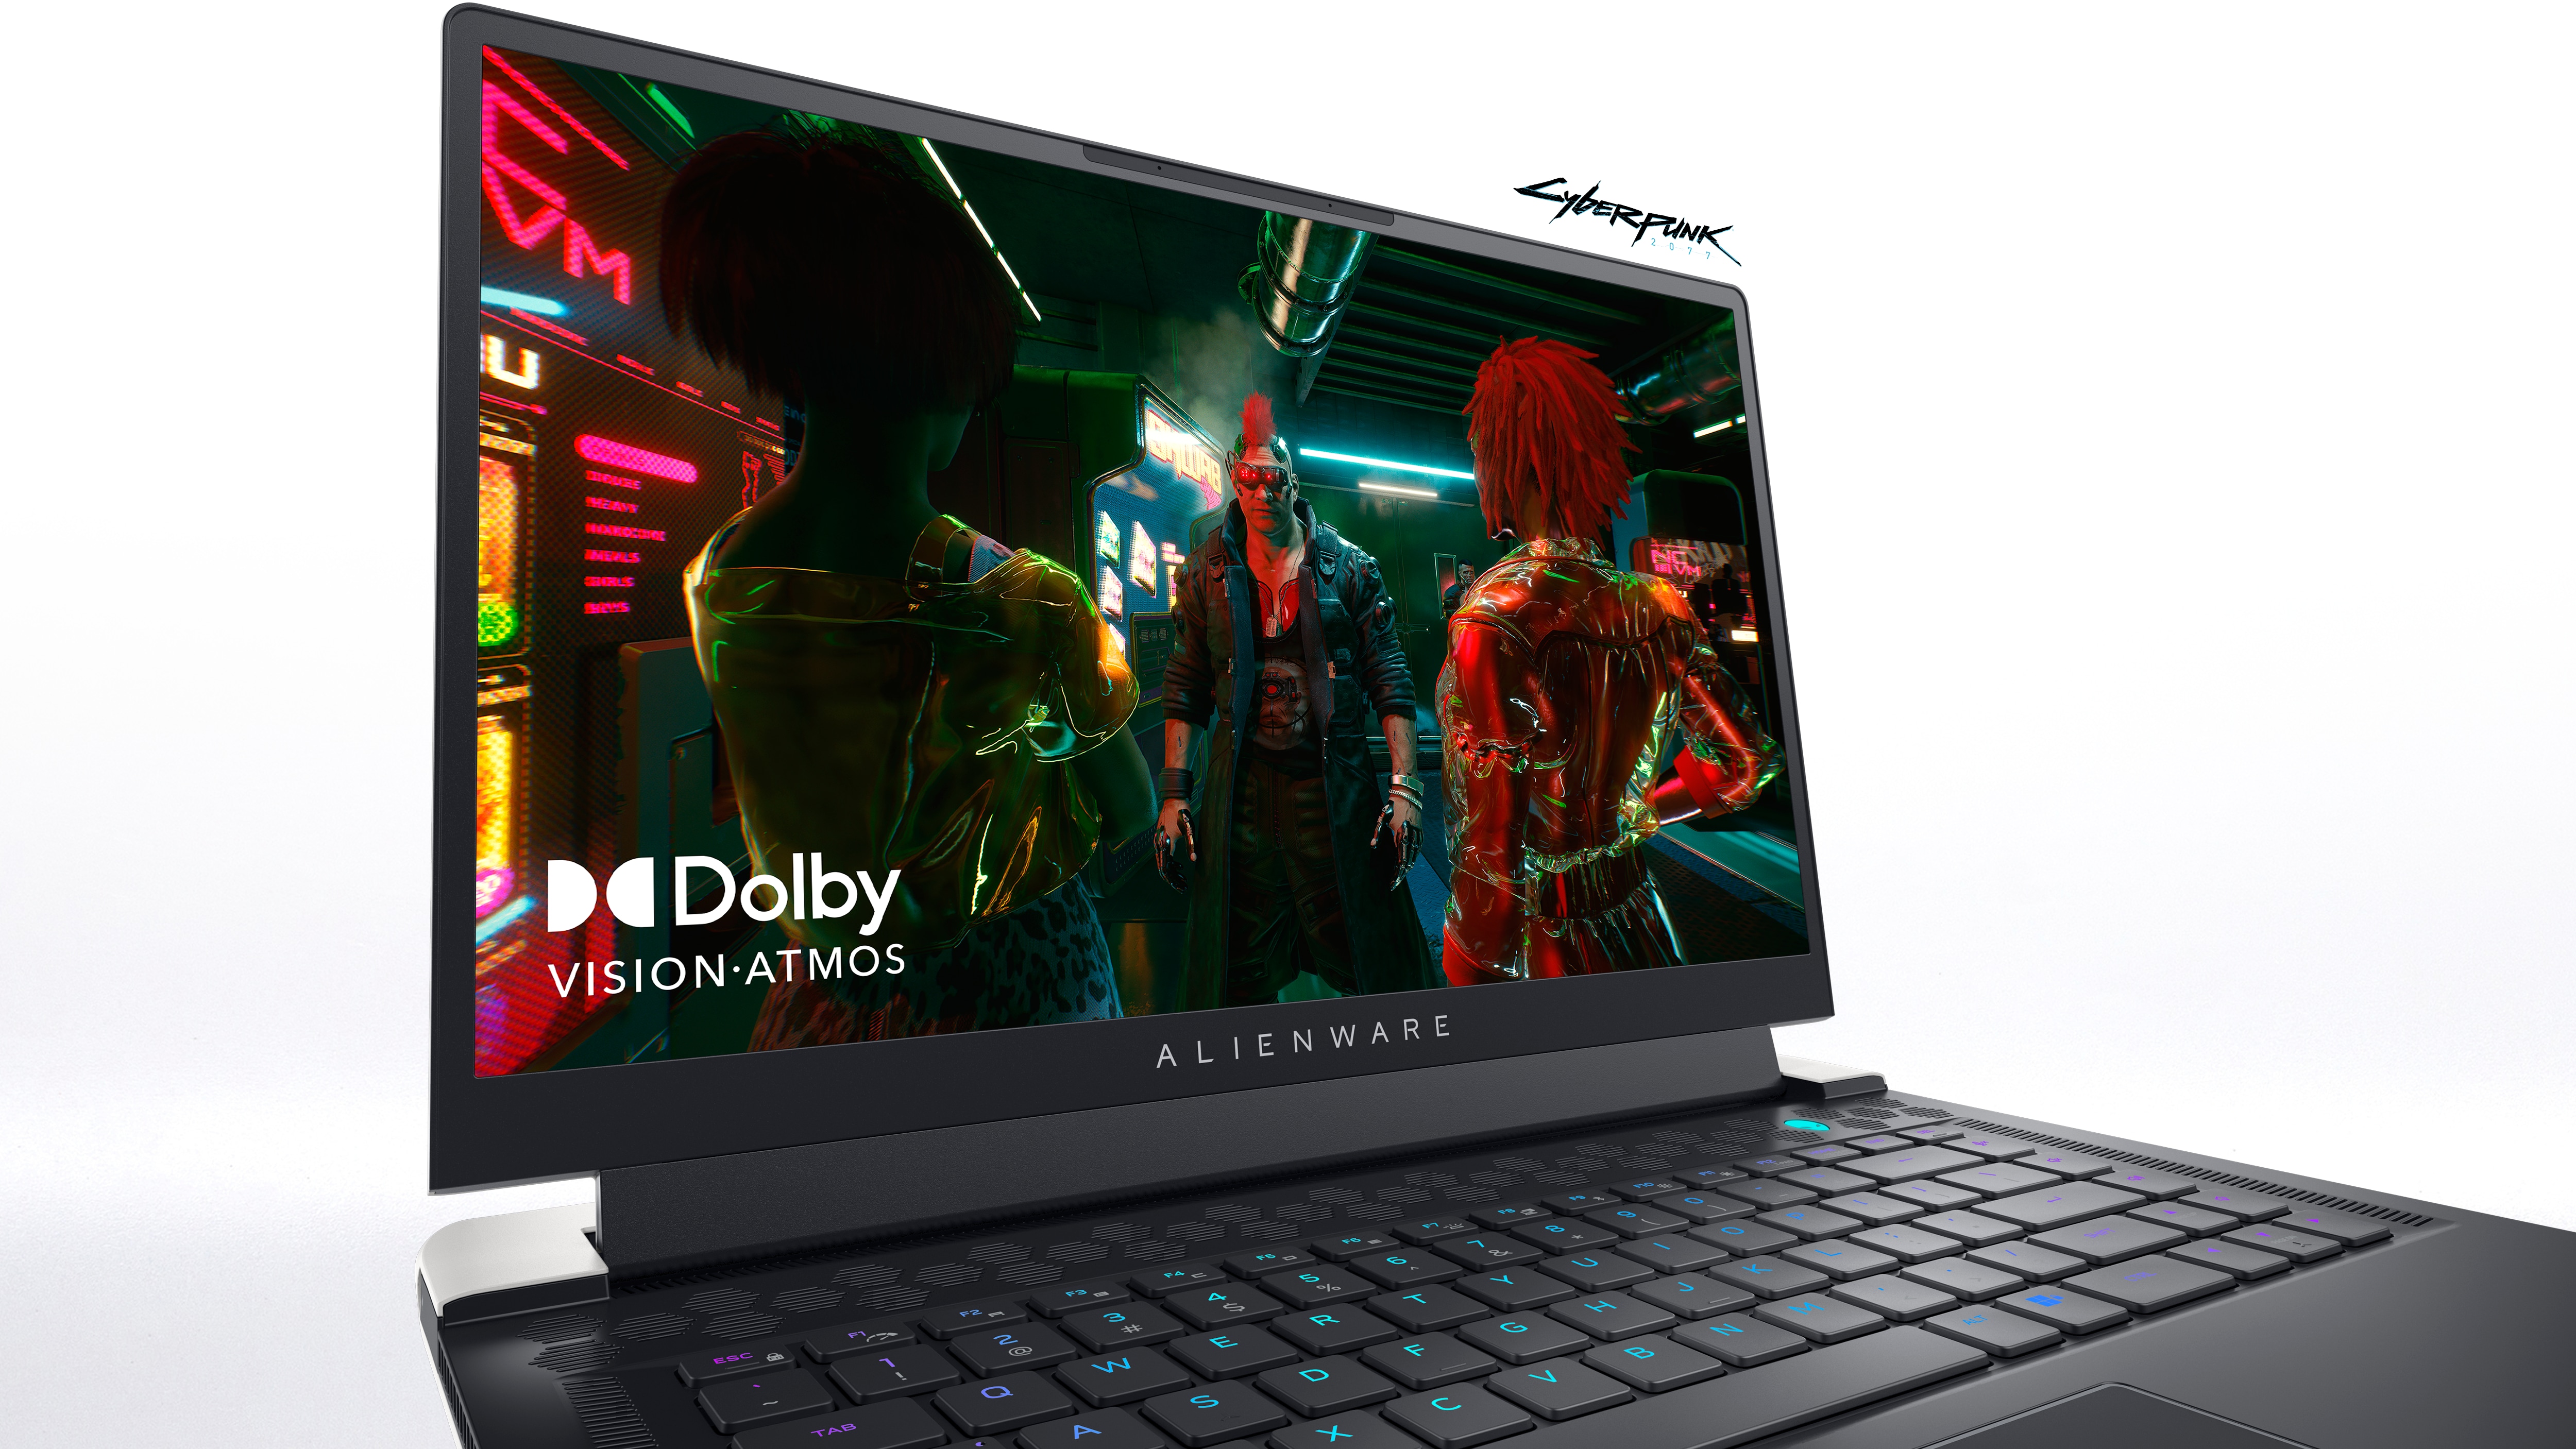 Image d’un ordinateur portable de gaming Dell Alienware x15 R2 avec l’image d’un jeu et le logo Dolby Vision-Atmos à l’écran.